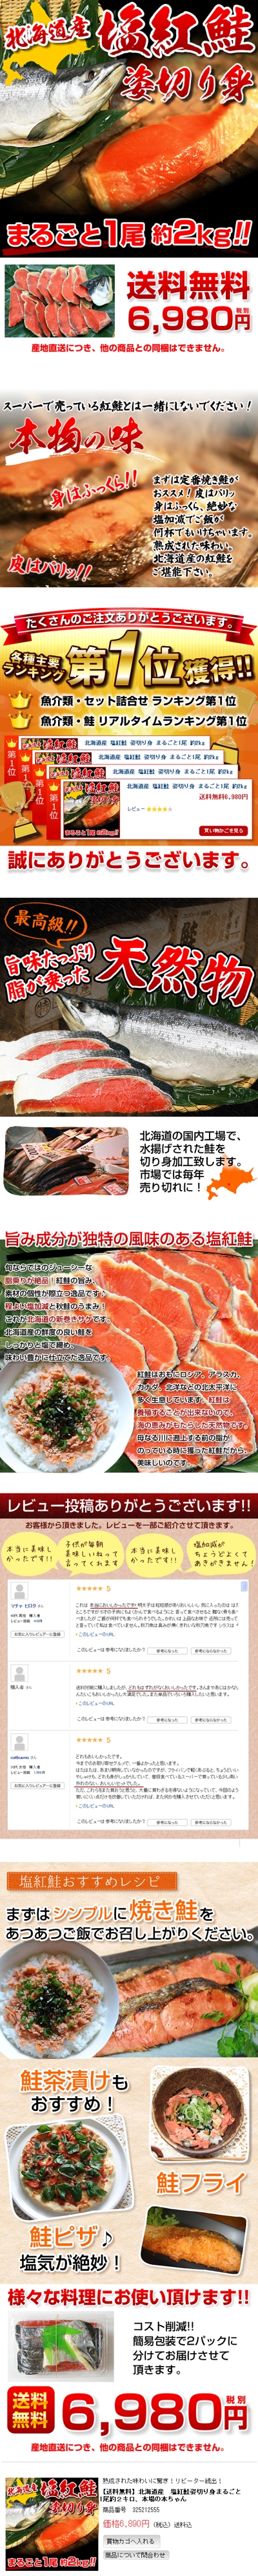 食品(海産物)のオリジナル商品ページ